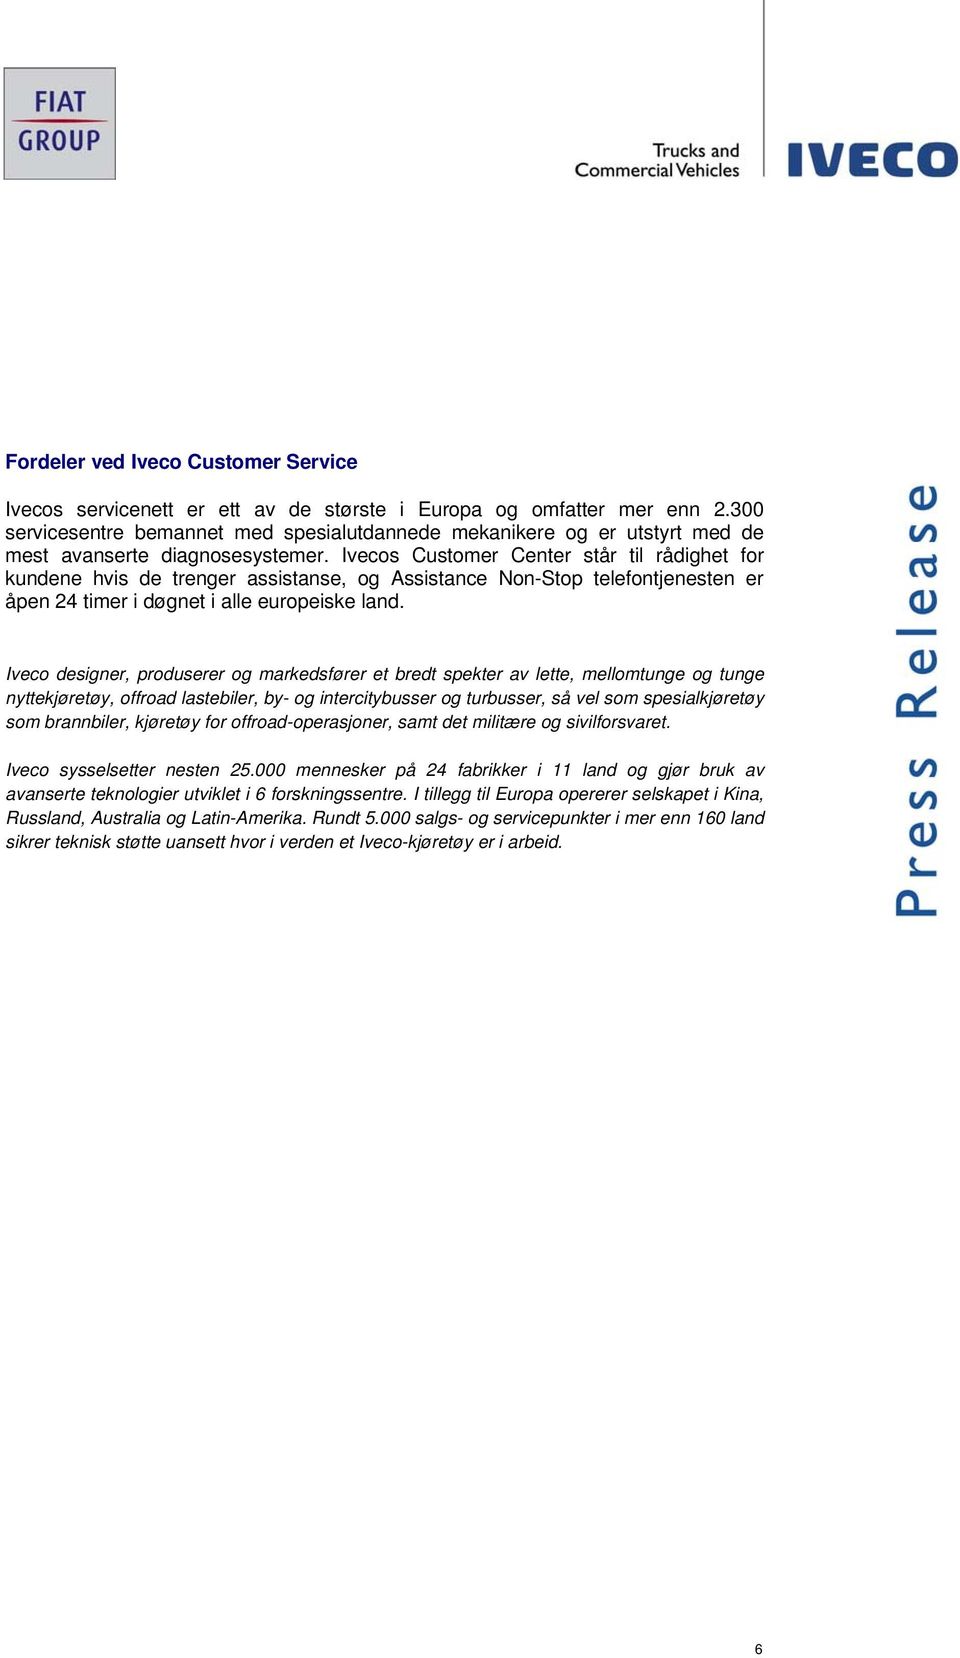 Ivecos Customer Center står til rådighet for kundene hvis de trenger assistanse, og Assistance Non-Stop telefontjenesten er åpen 24 timer i døgnet i alle europeiske land.